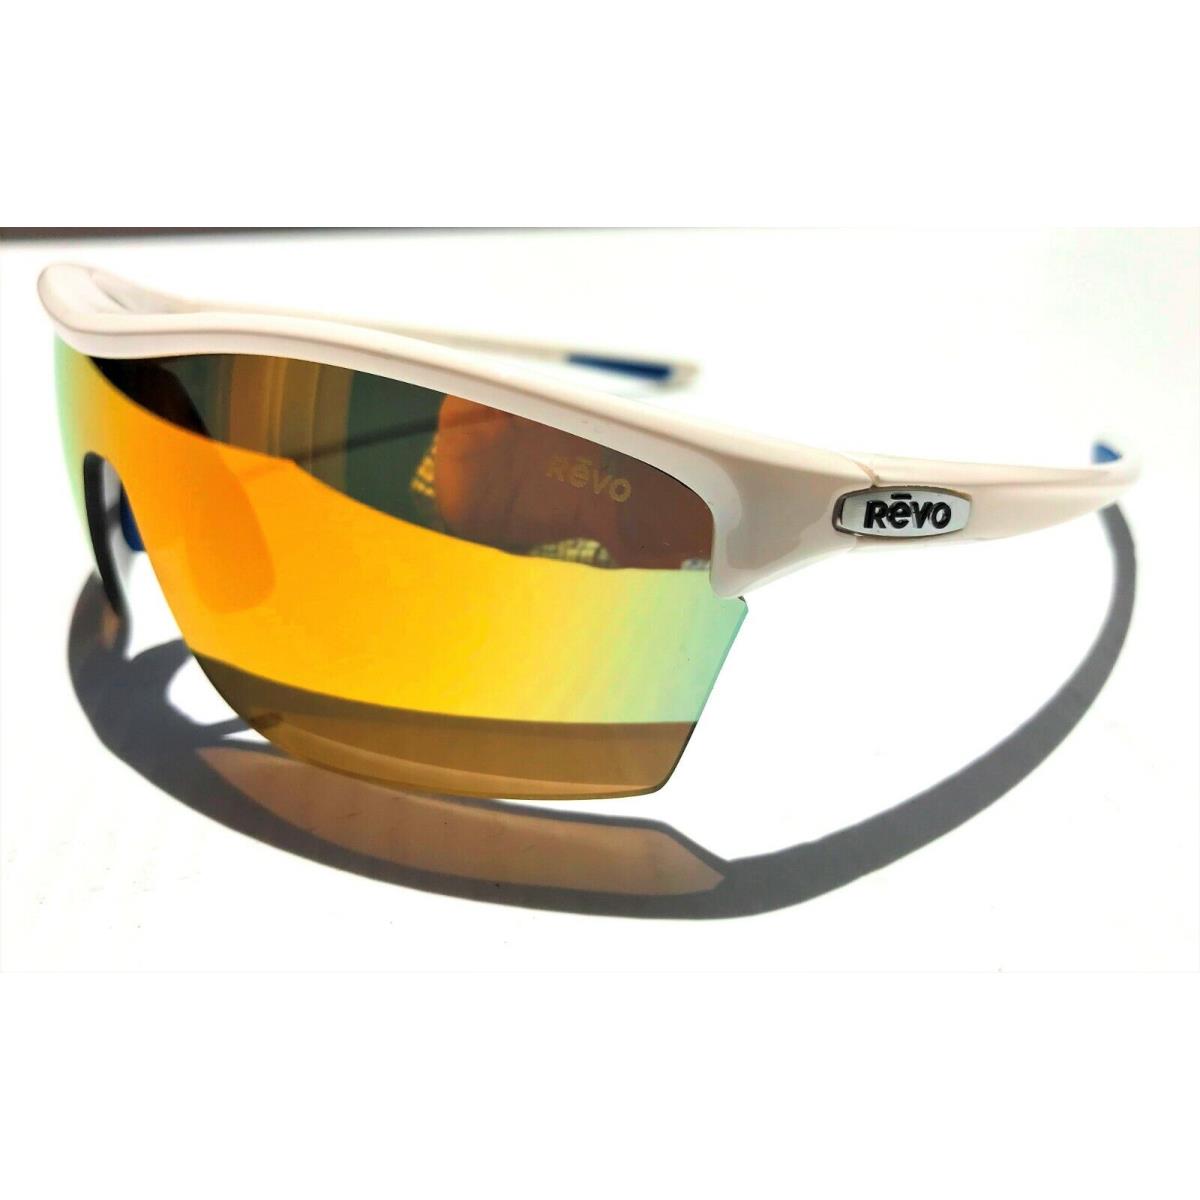 Revo sunglasses Edge River Jetty - White Frame, Orange Lens